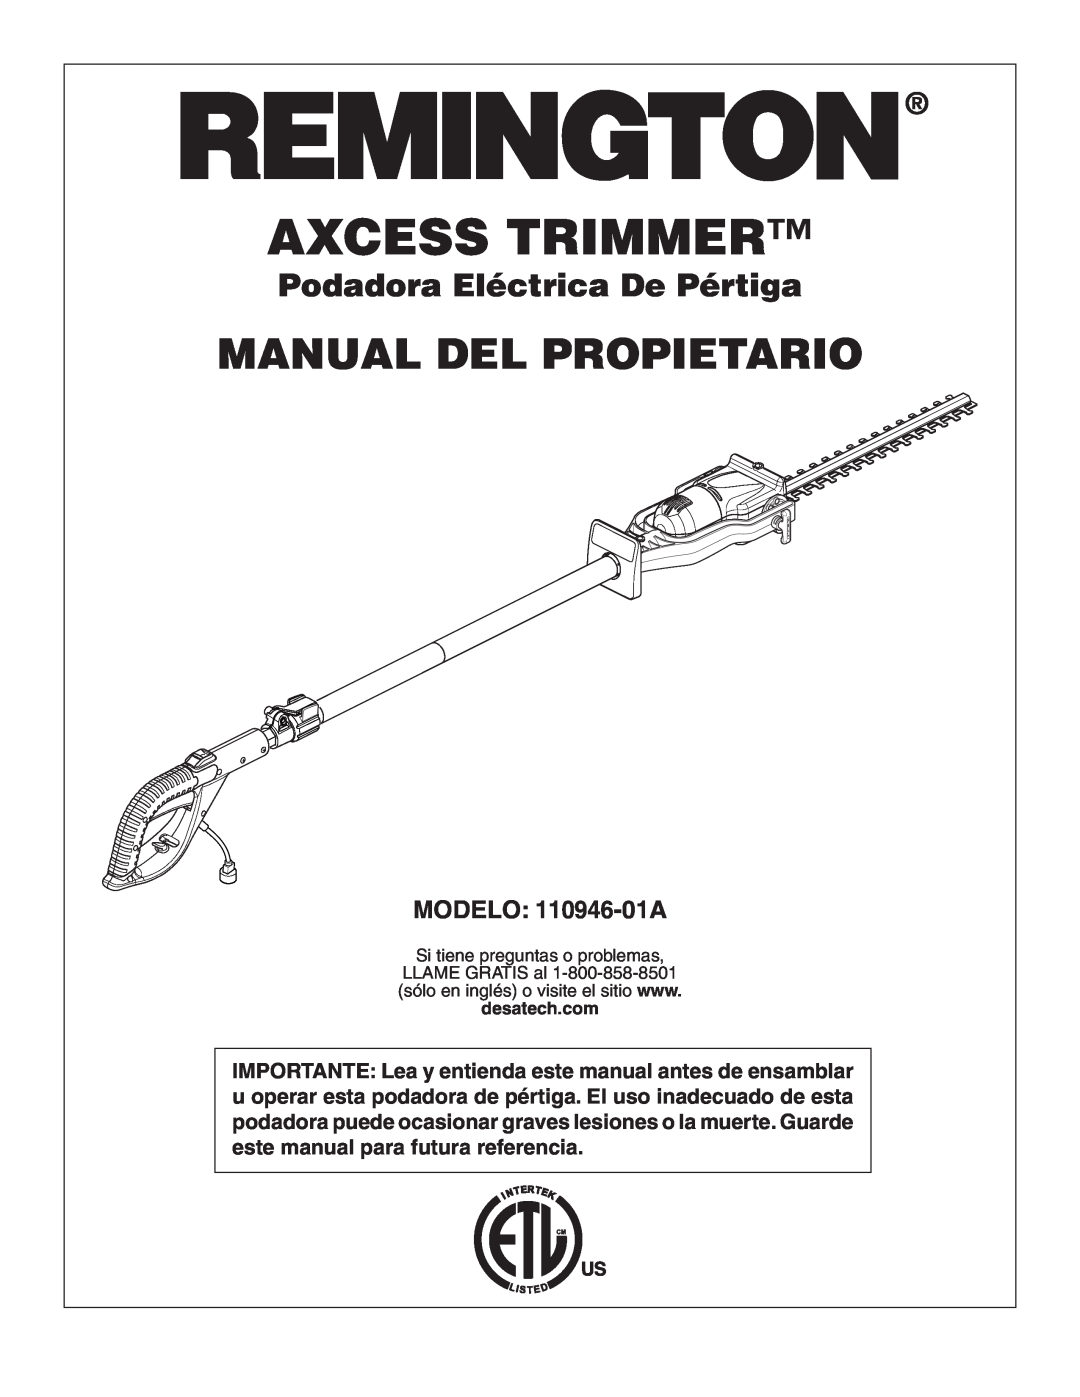 Remington owner manual Manual Del Propietario, Podadora Eléctrica De Pértiga, MODELO 110946-01A, Axcess Trimmer 